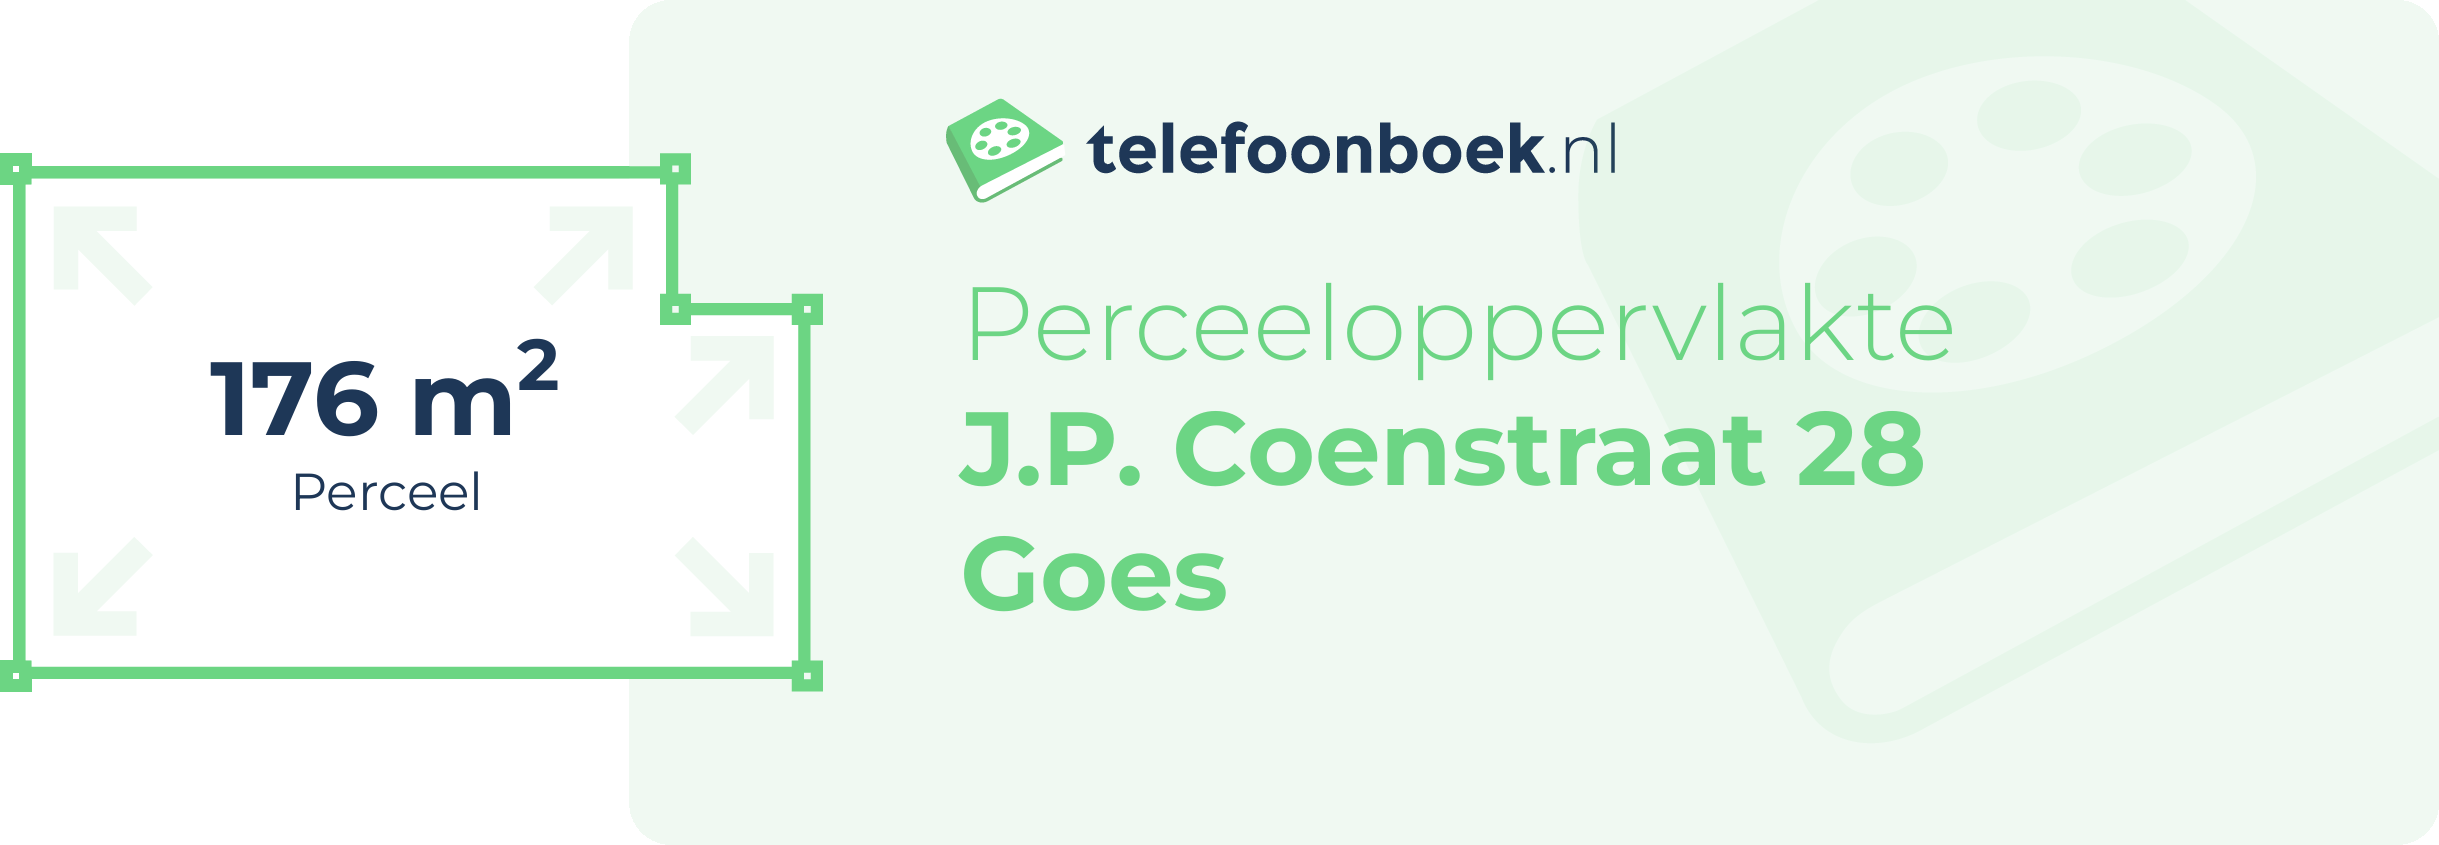 Perceeloppervlakte J.P. Coenstraat 28 Goes